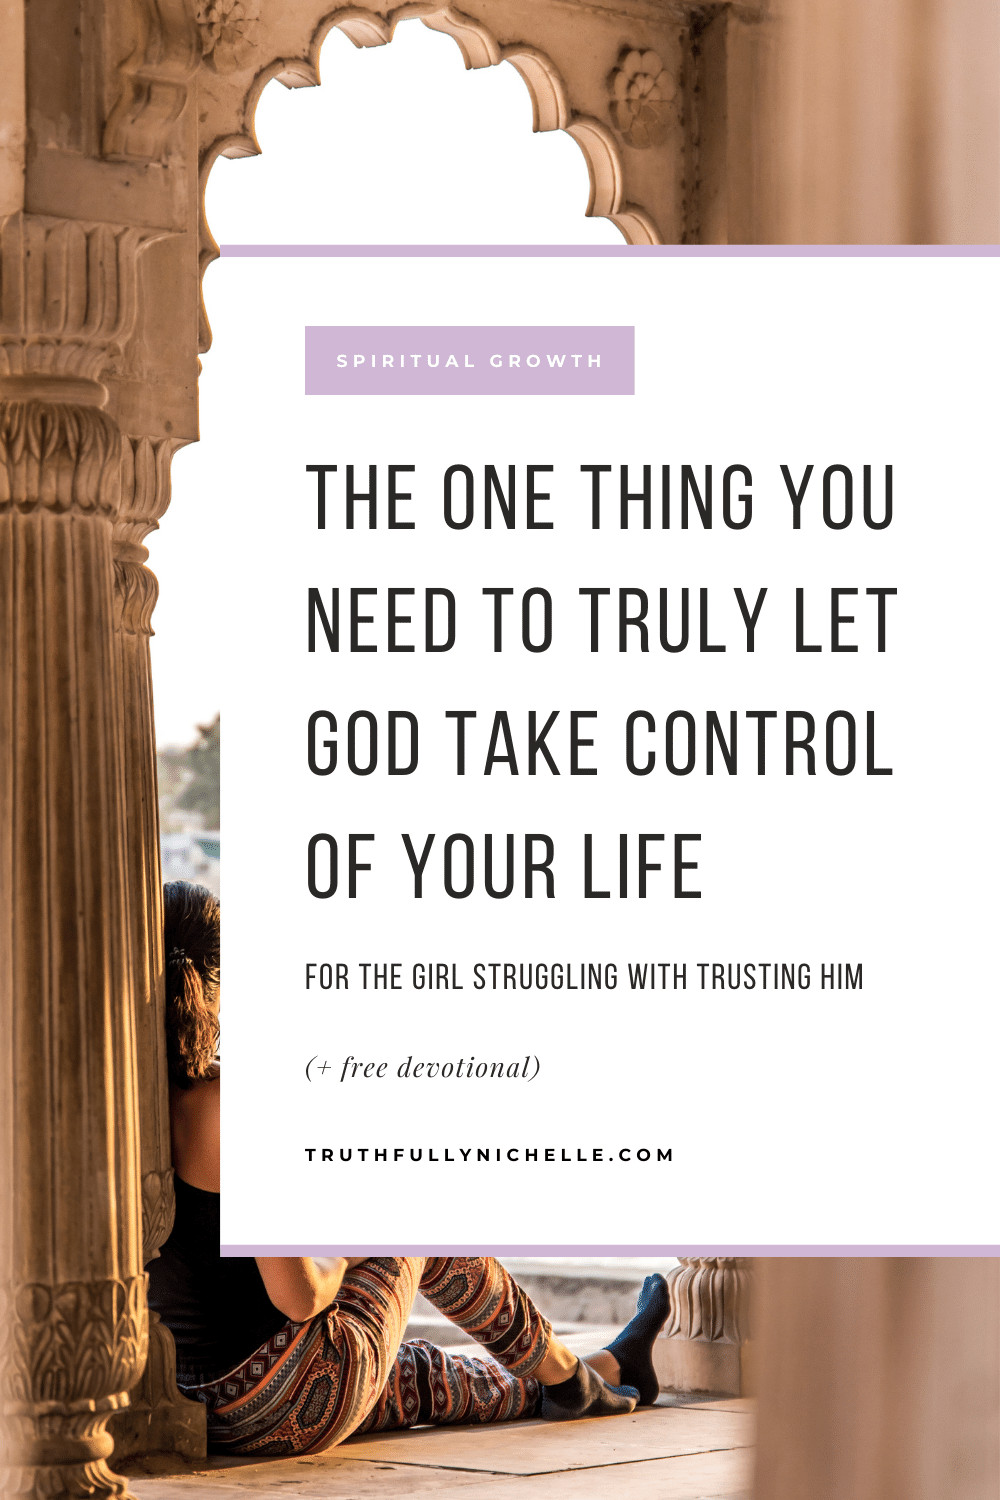 odpuszczanie i pozwalanie Bogu przejąć kontrolę, jak pozwolić Bogu przejąć kontrolę nad twoim życiem, kiedy pozwalasz Bogu przejąć kontrolę, pozwalając Bogu prowadzić, oddając kontrolę Bogu, pozwól Bogu kontrolować twoje życie, pozwalając Bogu przejąć kontrolę, jak dać Bogu kontrolę, Bóg kontroluje moje życie i przeznaczenie, jak całkowicie wierzyć w Boga, jak pozwolić Bogu przejąć kontrolę, jak w pełni zaufać Bogu, jak zaufać Bogu w trudnych czasach duchowa inspiracja i zachęta